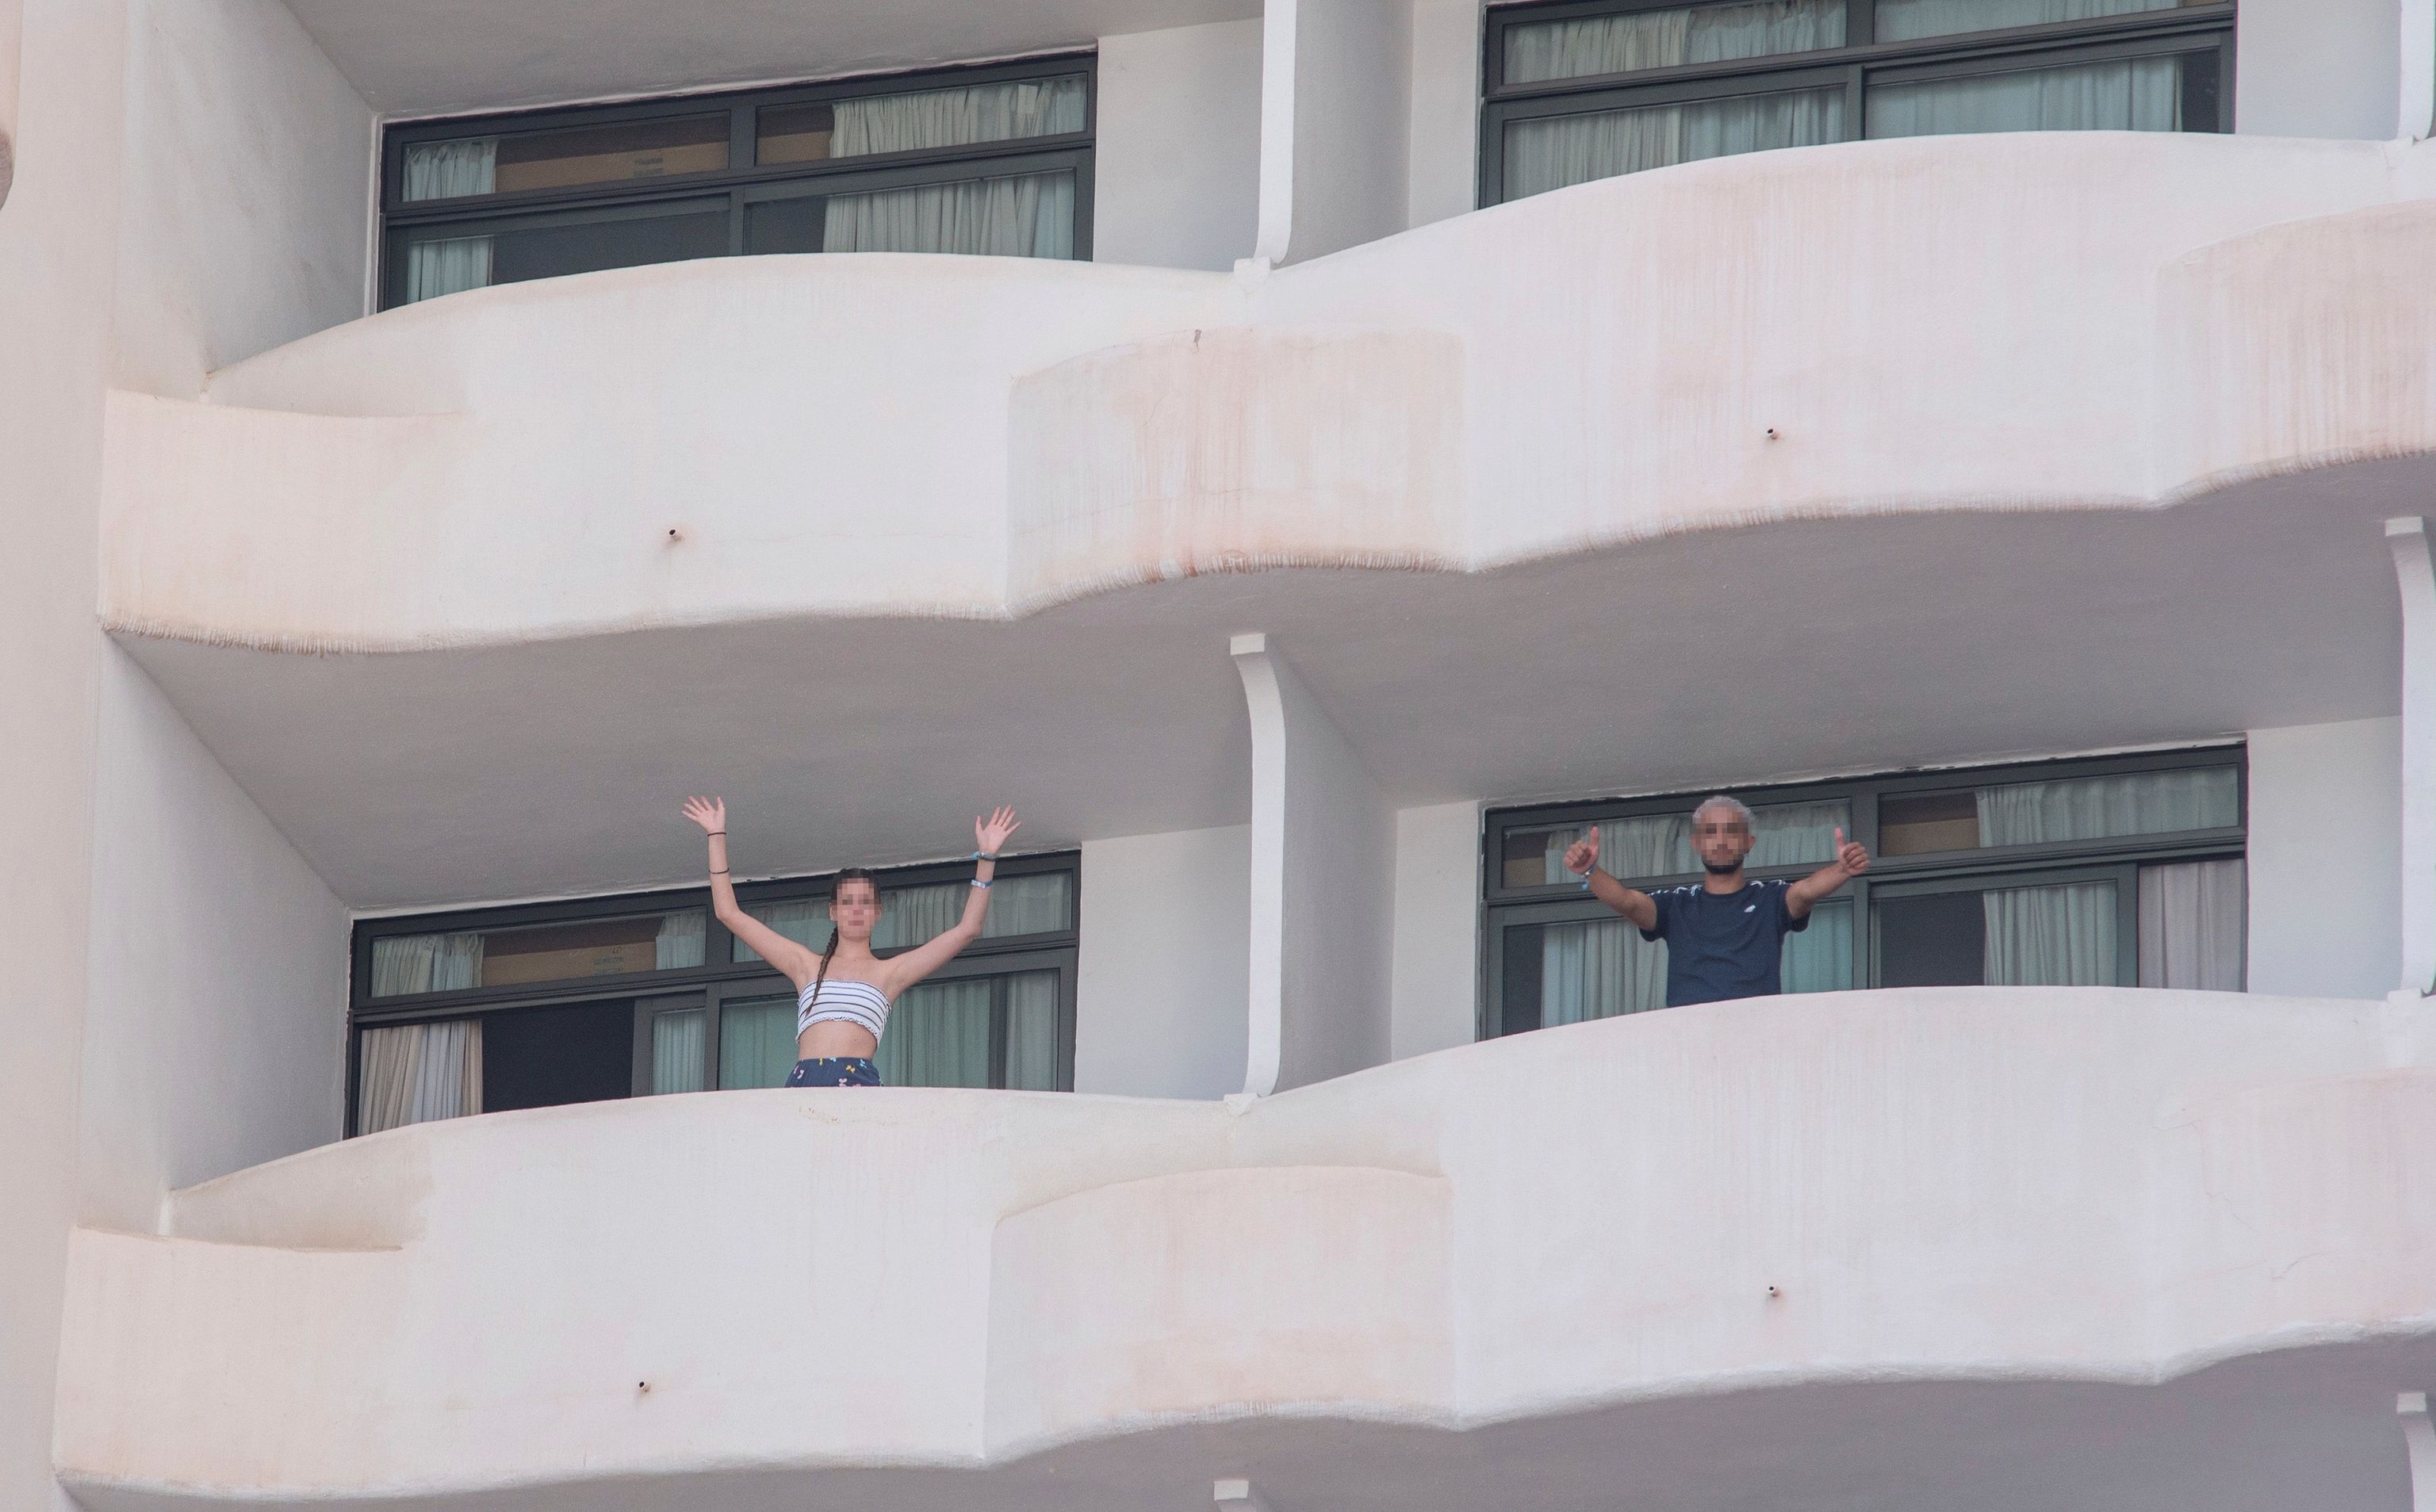 Dos jvenes que permanecen en aislamiento en el hotel Palma Bellver de Palma saludan desde los balcones.